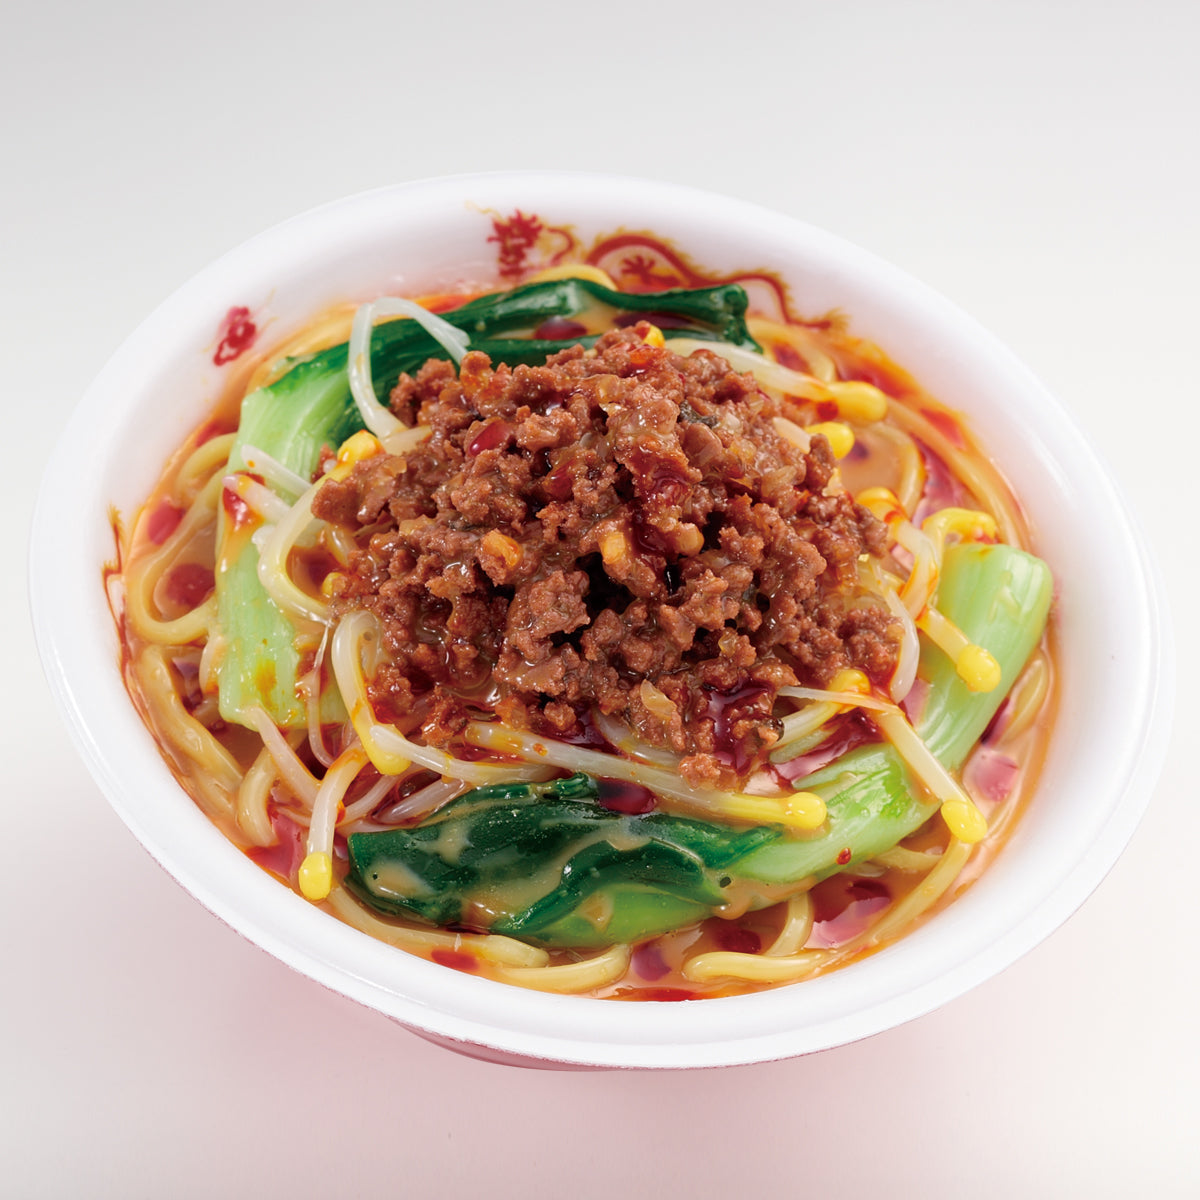 自分でつくる食品サンプル製作キット「さんぷるんvol.11 坦々麺」の完成イメージ画像です。